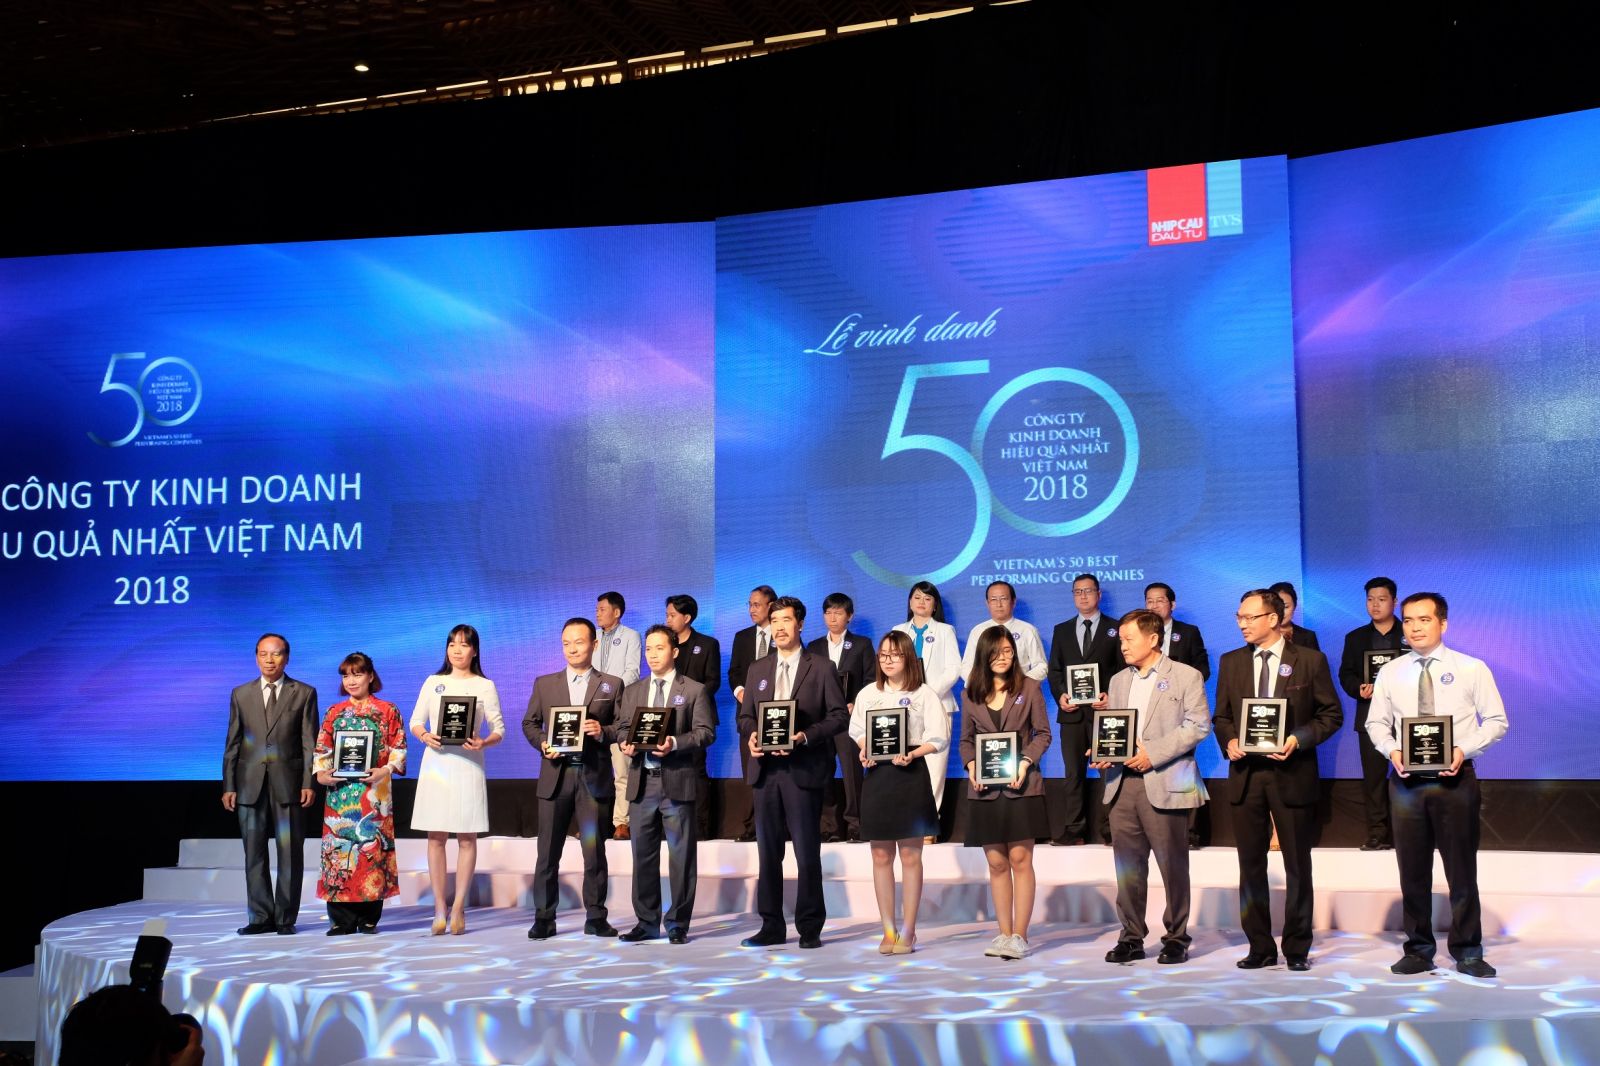 (Vietcombank) 7 lần liên tiếp vinh dự được bình chọn trong danh sách Top 50 và dẫn đầu các ngân hàng trong danh sách doanh nghiệp tỷ USD hiệu quả nhất Việt Nam.